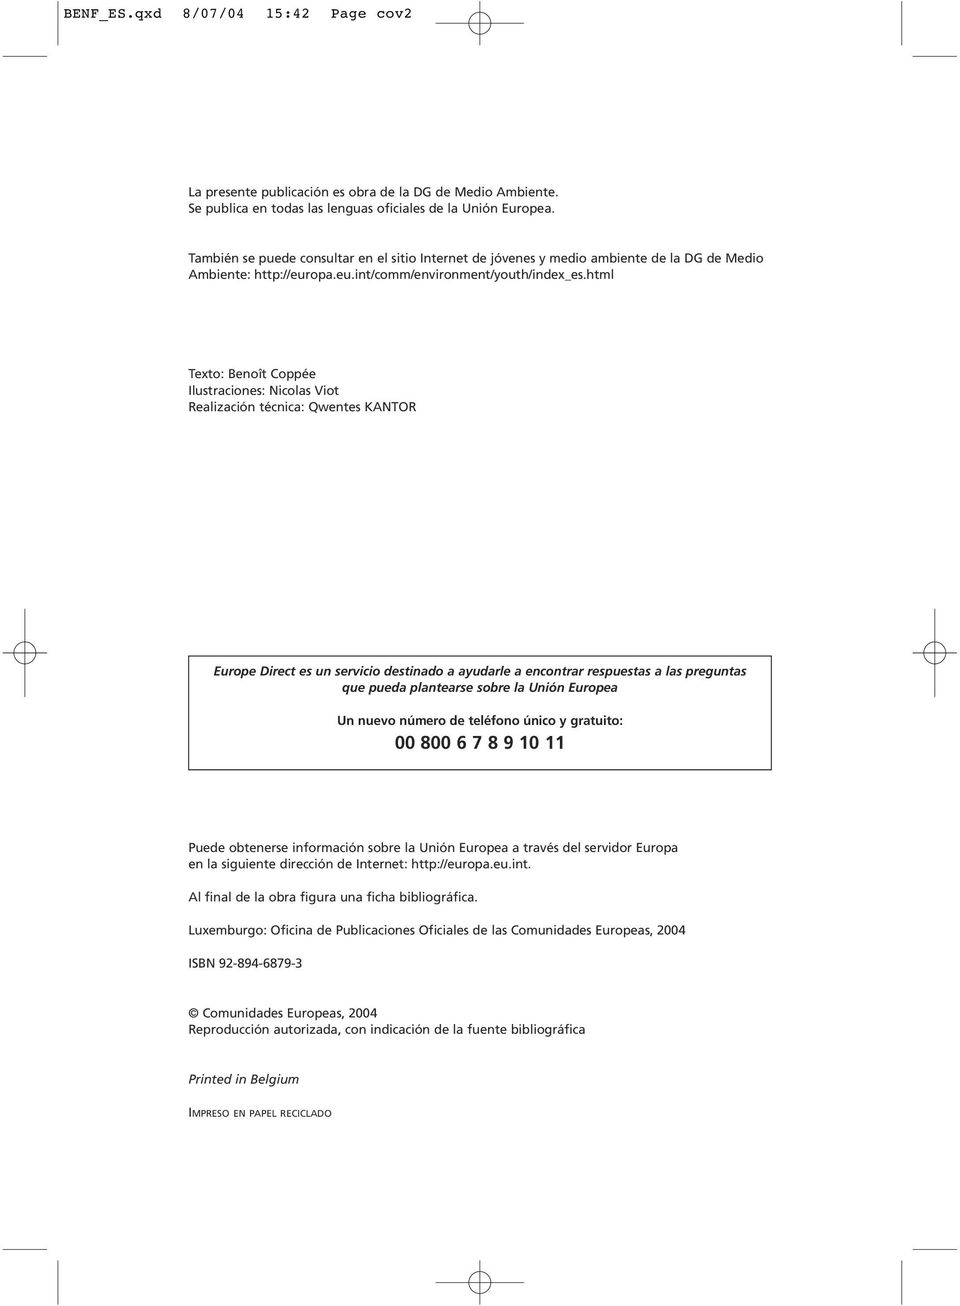 html Texto: Benoît Coppée Ilustraciones: Nicolas Viot Realización técnica: Qwentes KANTOR Europe Direct es un servicio destinado a ayudarle a encontrar respuestas a las preguntas que pueda plantearse